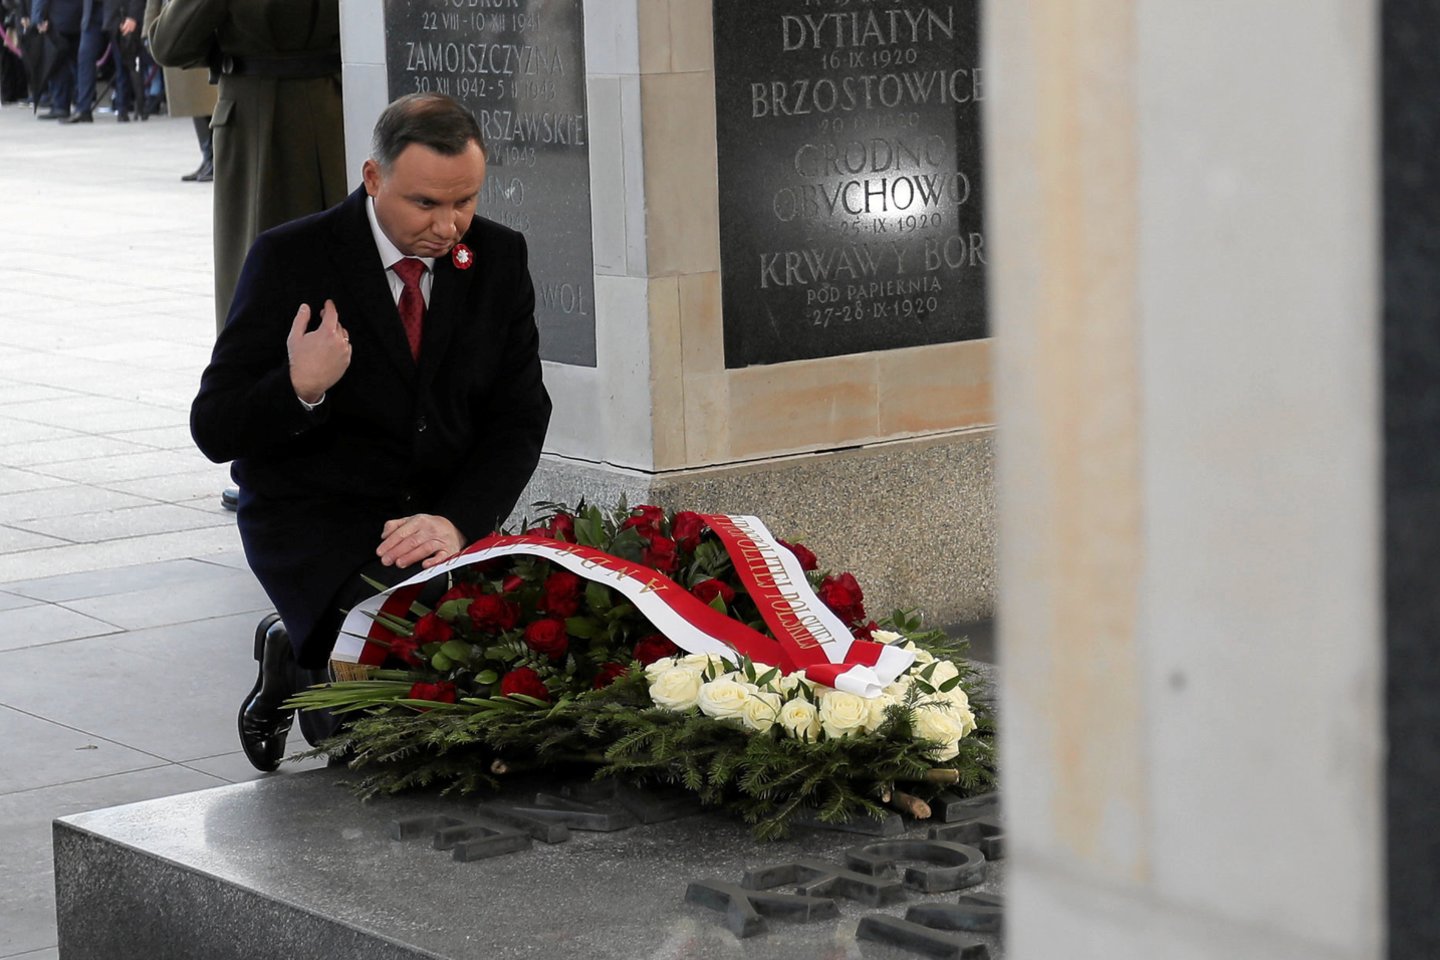  Lenkijos prezidentas ir kiti pareigūnai pirmadienį dalyvauja vainikų padėjimo ceremonijose ir kituose patriotiniuose renginiuose, šaliai minint Nepriklausomybės dieną – šventę, kurią pastaraisiais metais temdė ultradešiniųjų nacionalistų organizuojamos eitynės.<br> Reuters/Scanpix nuotr.